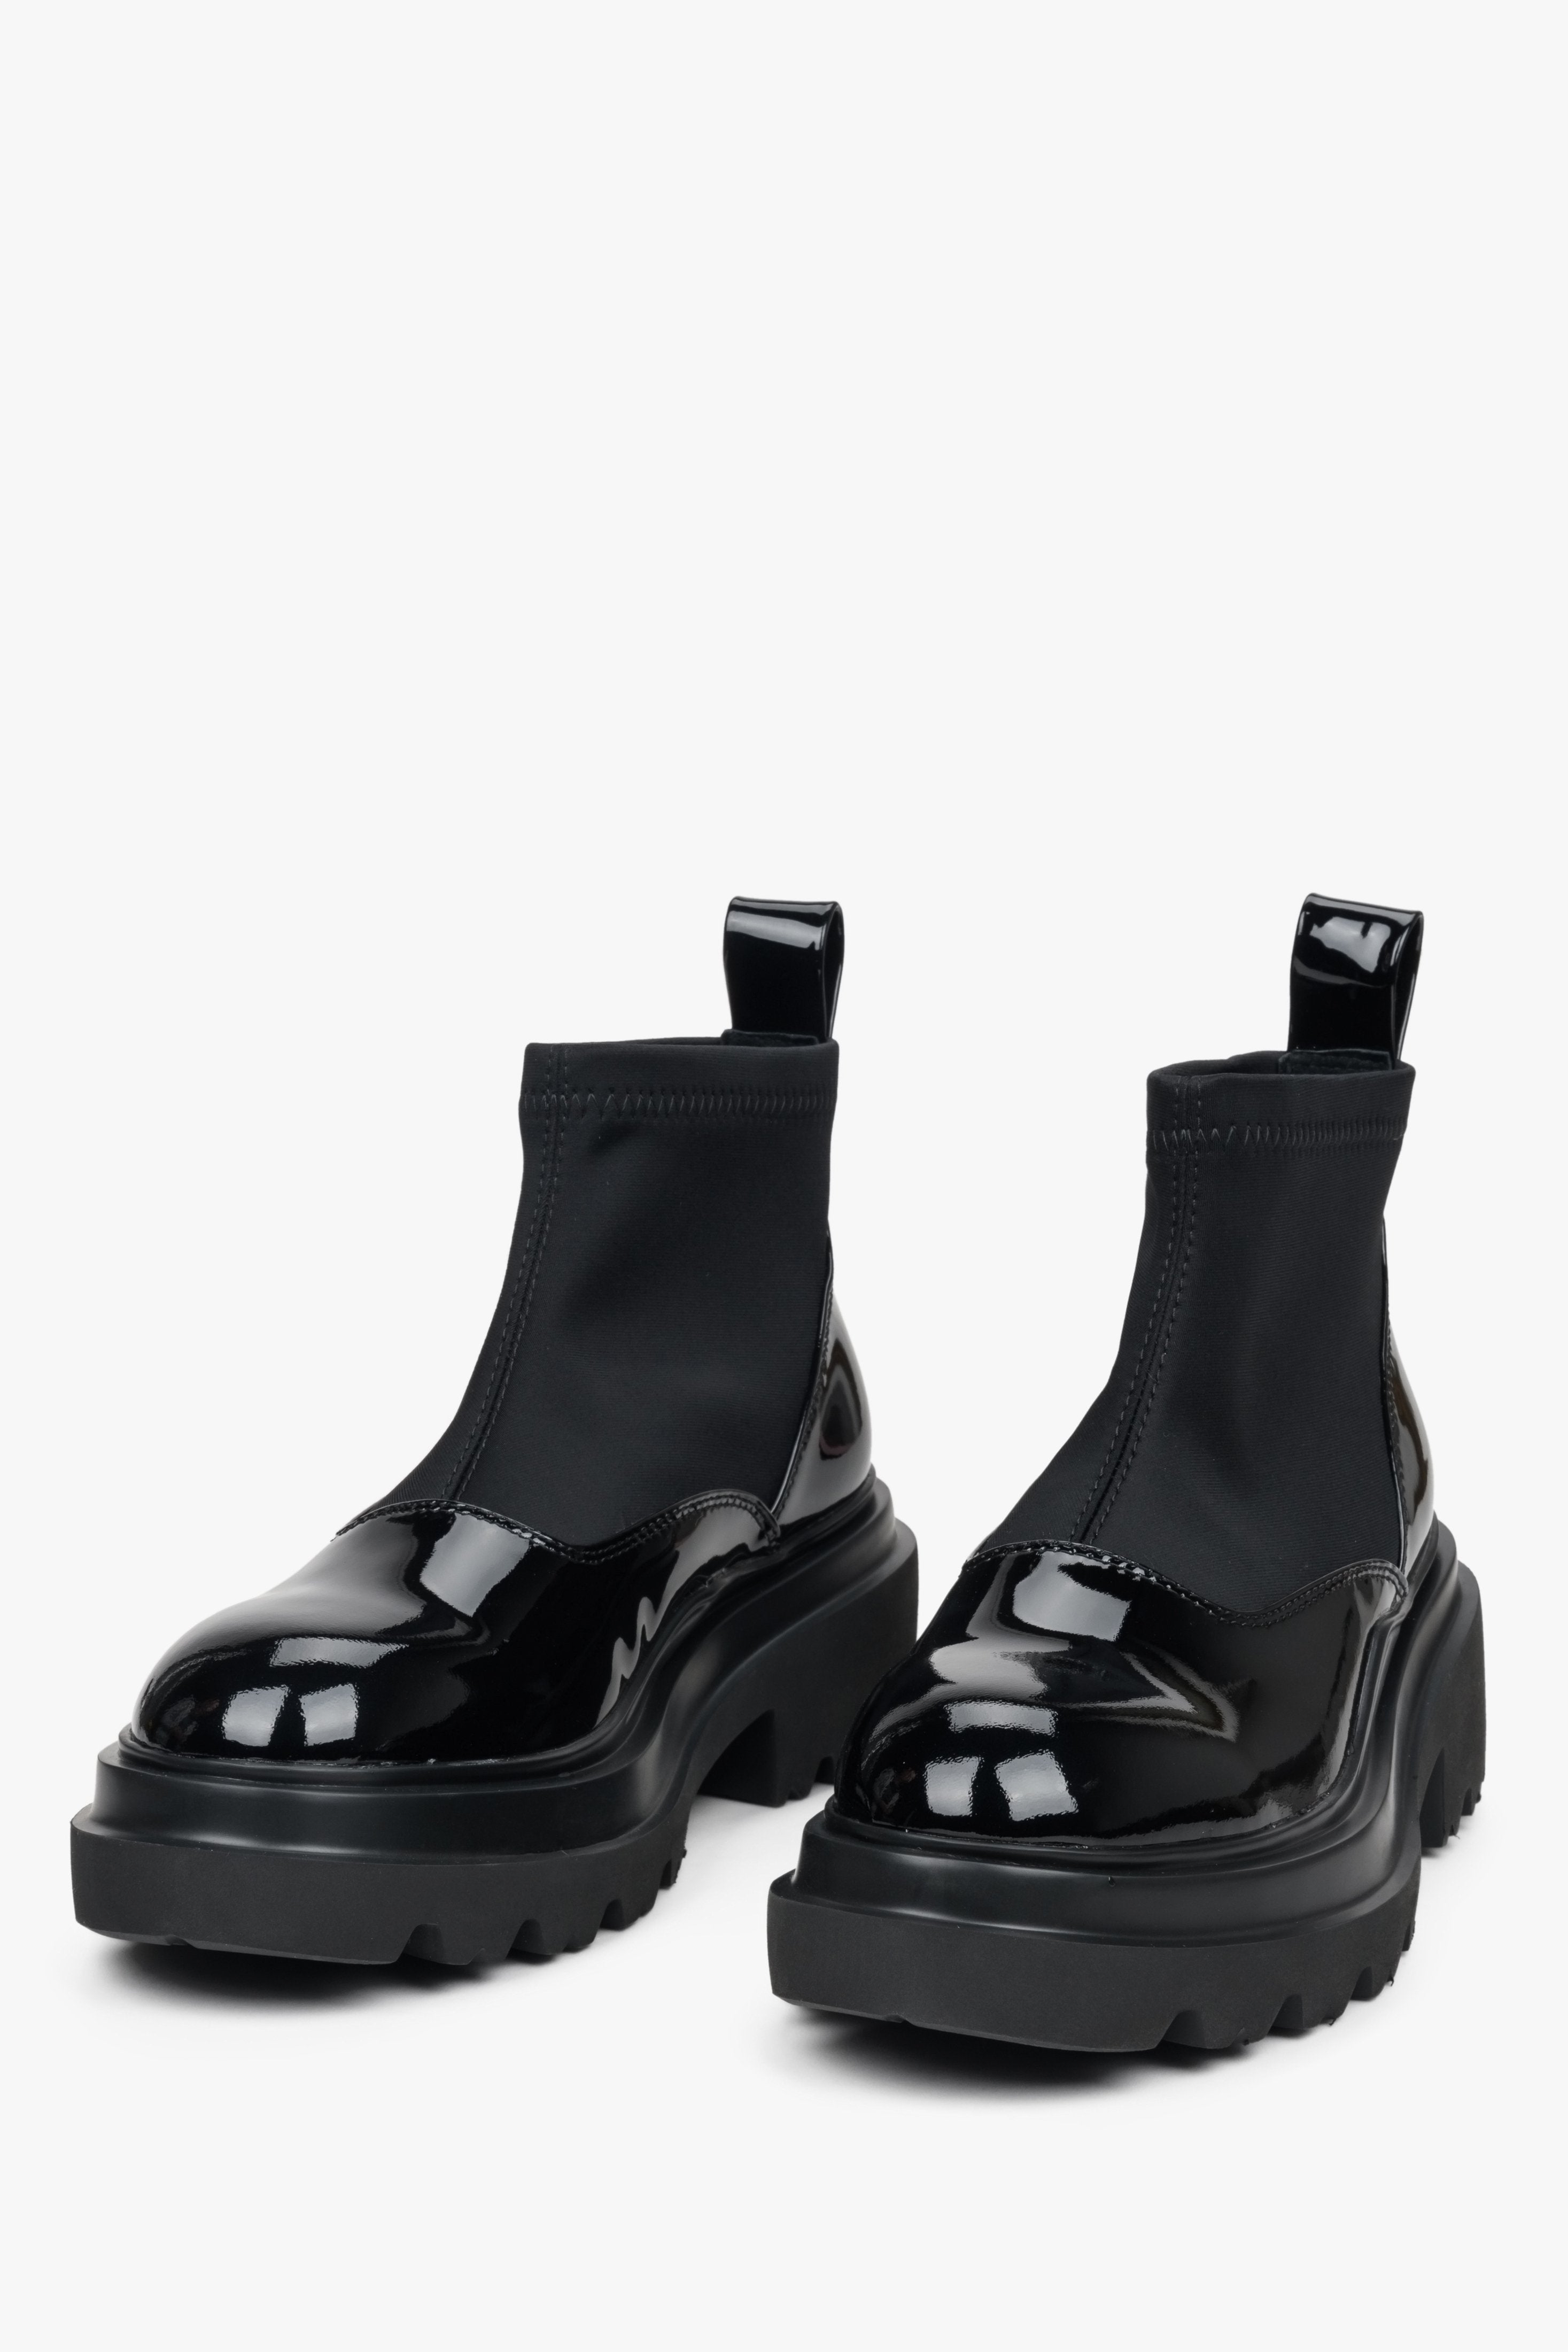 Damskie zimowe botki ze skóry lakierowanej Estro - przednia część buta i pogląd na korpus obuwia.